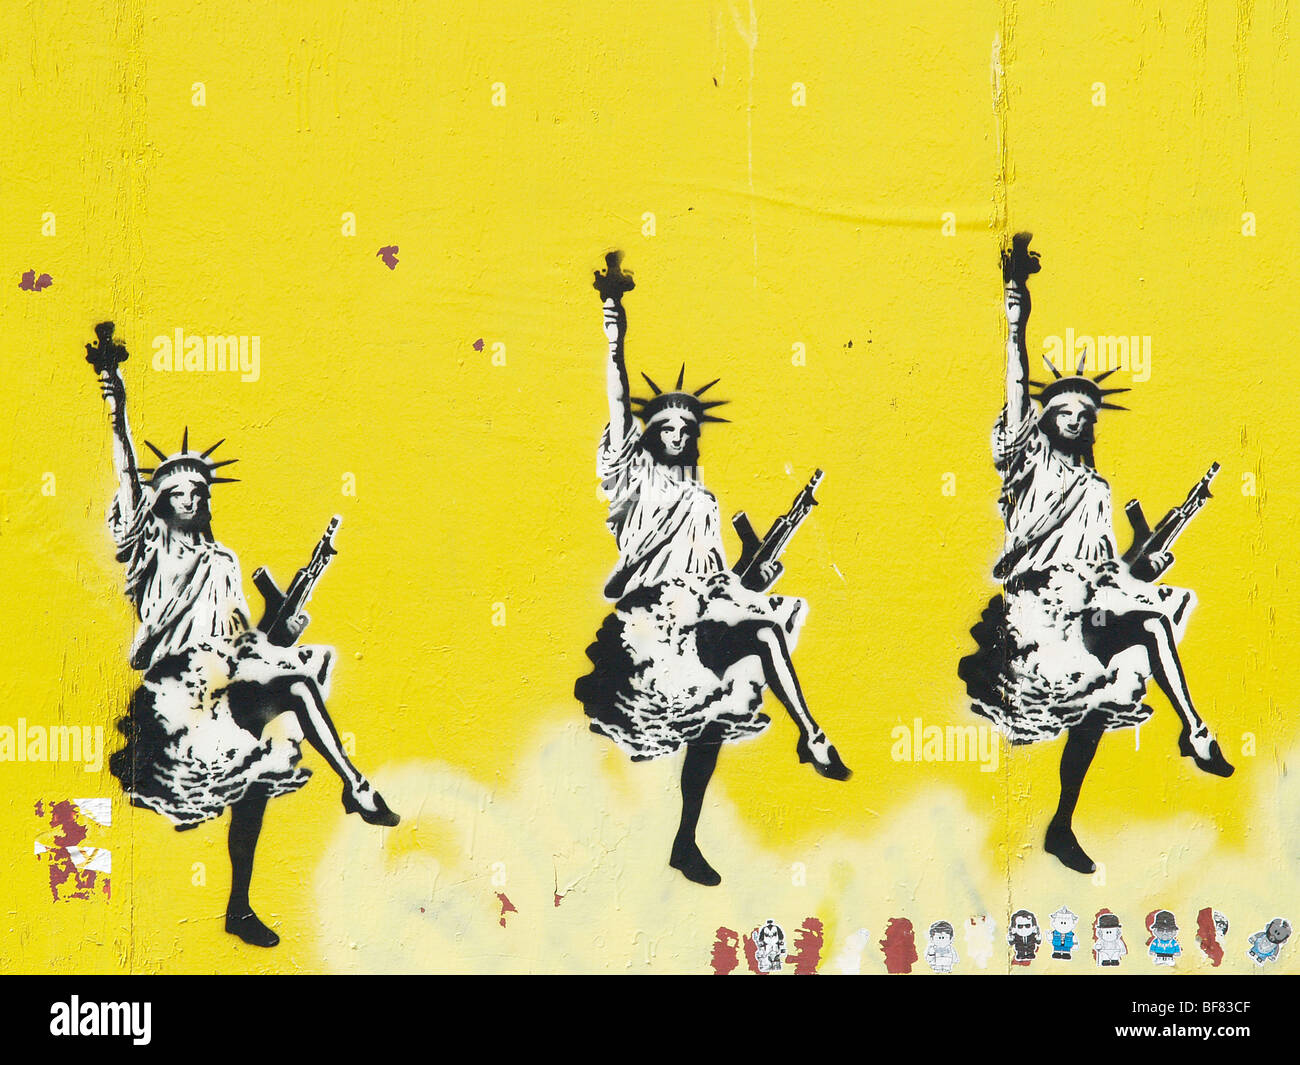 Schablone Graffiti Banksy Stil, street-Art in Bristol, England UK, Freiheitsstatue mit AK-47, gelbe Wand Freiheit Dame bristol Stockfoto